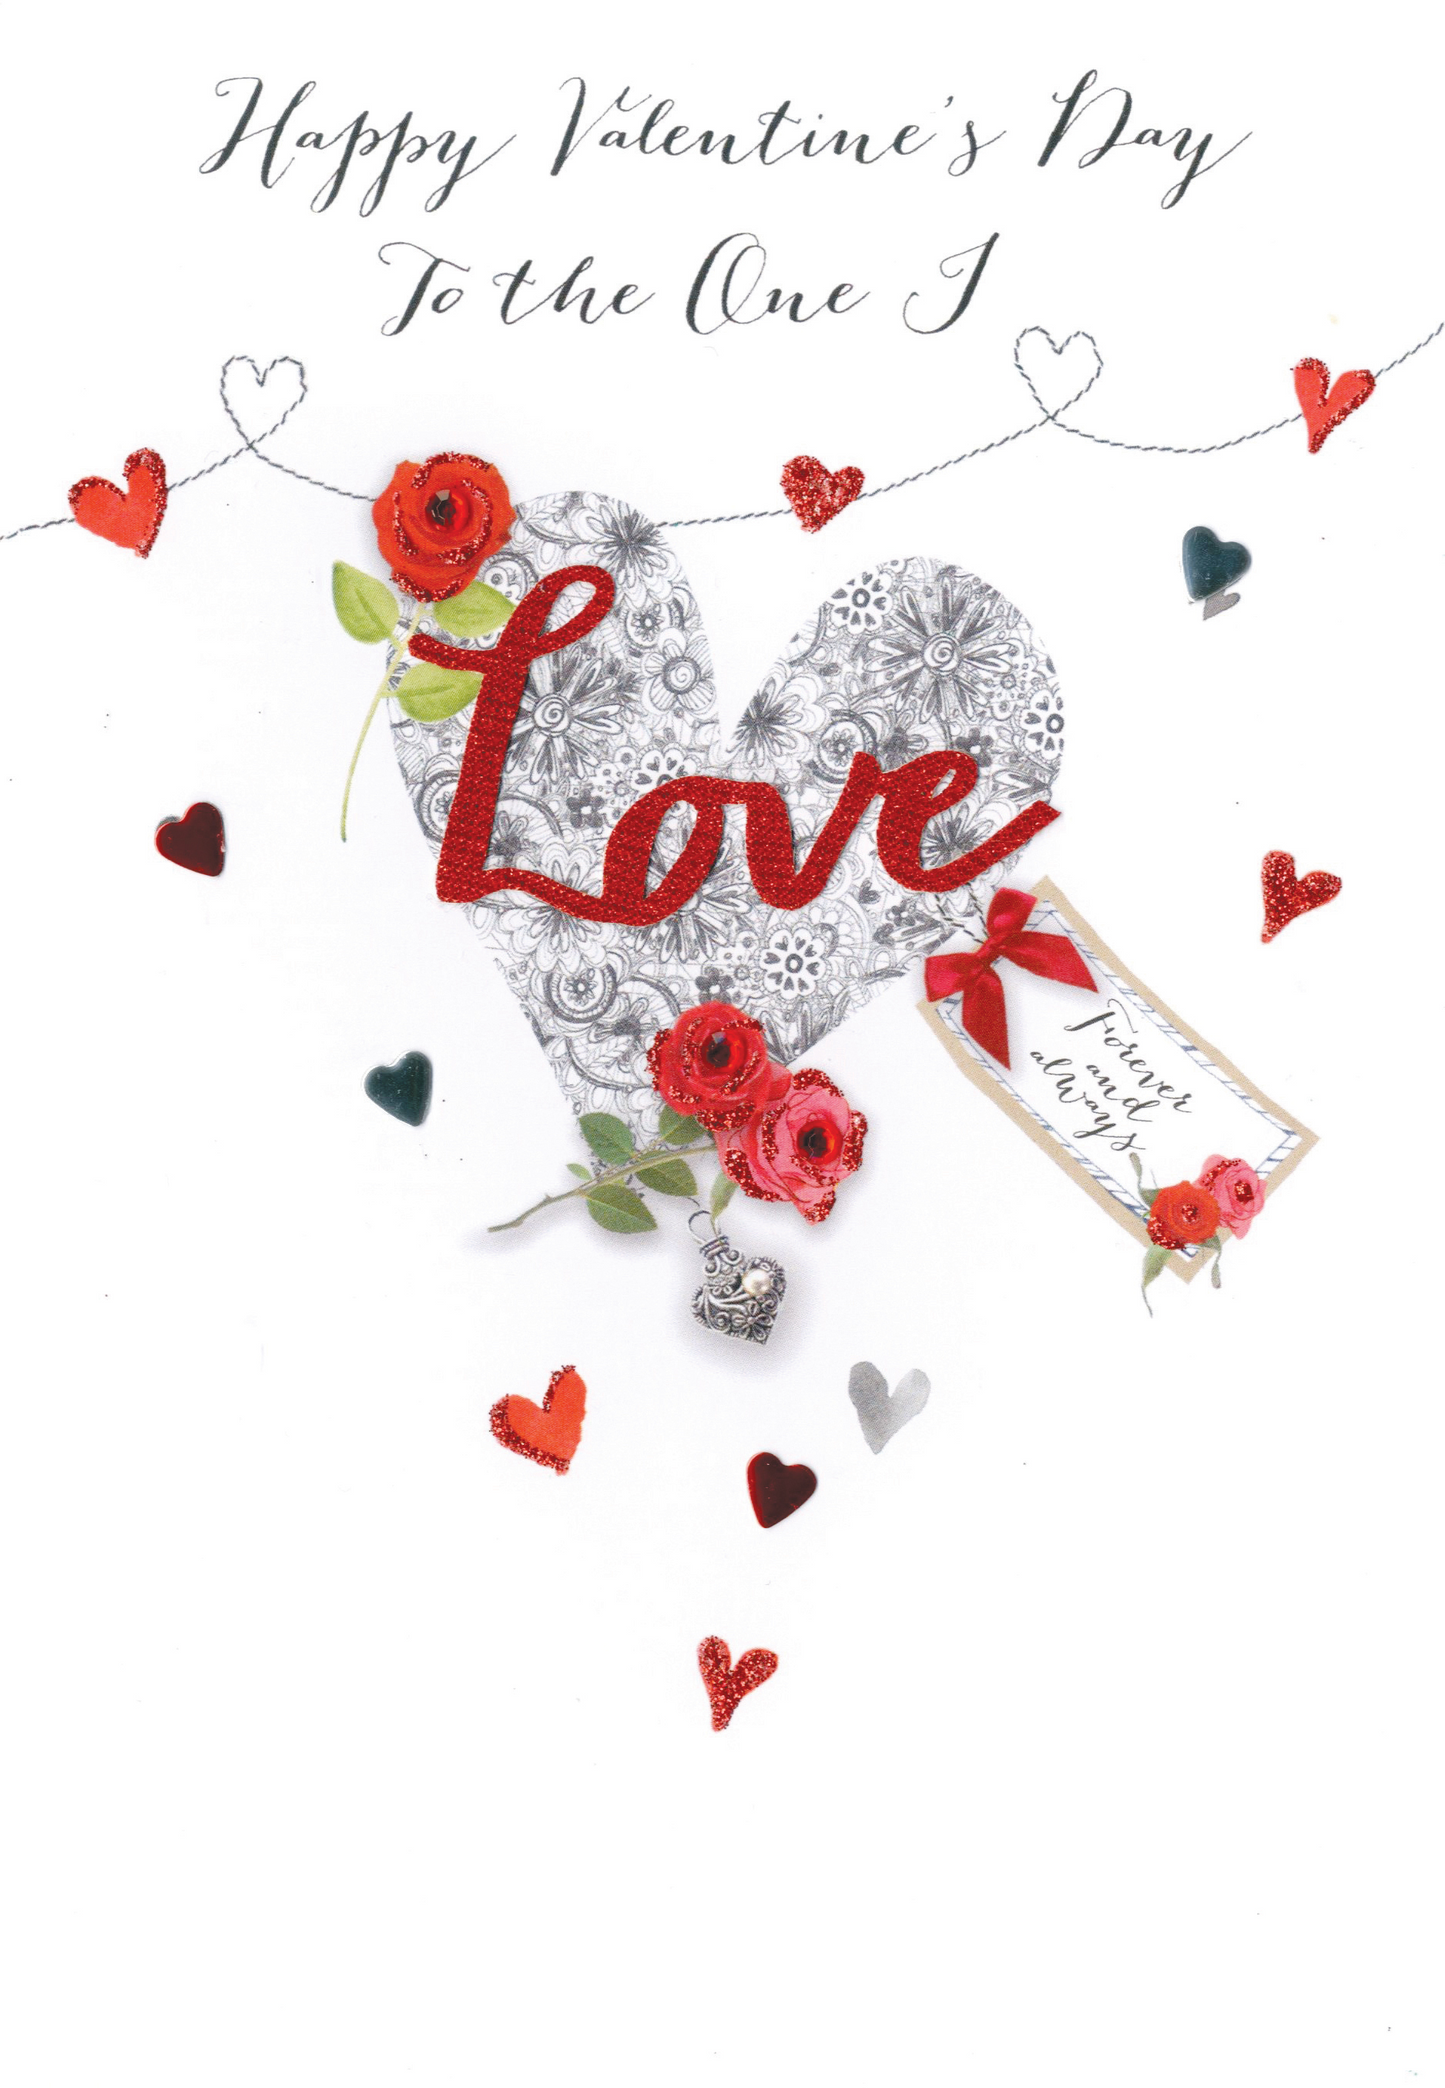 One I Love Embellished Joie De Vivre Valentine's Greeting Card